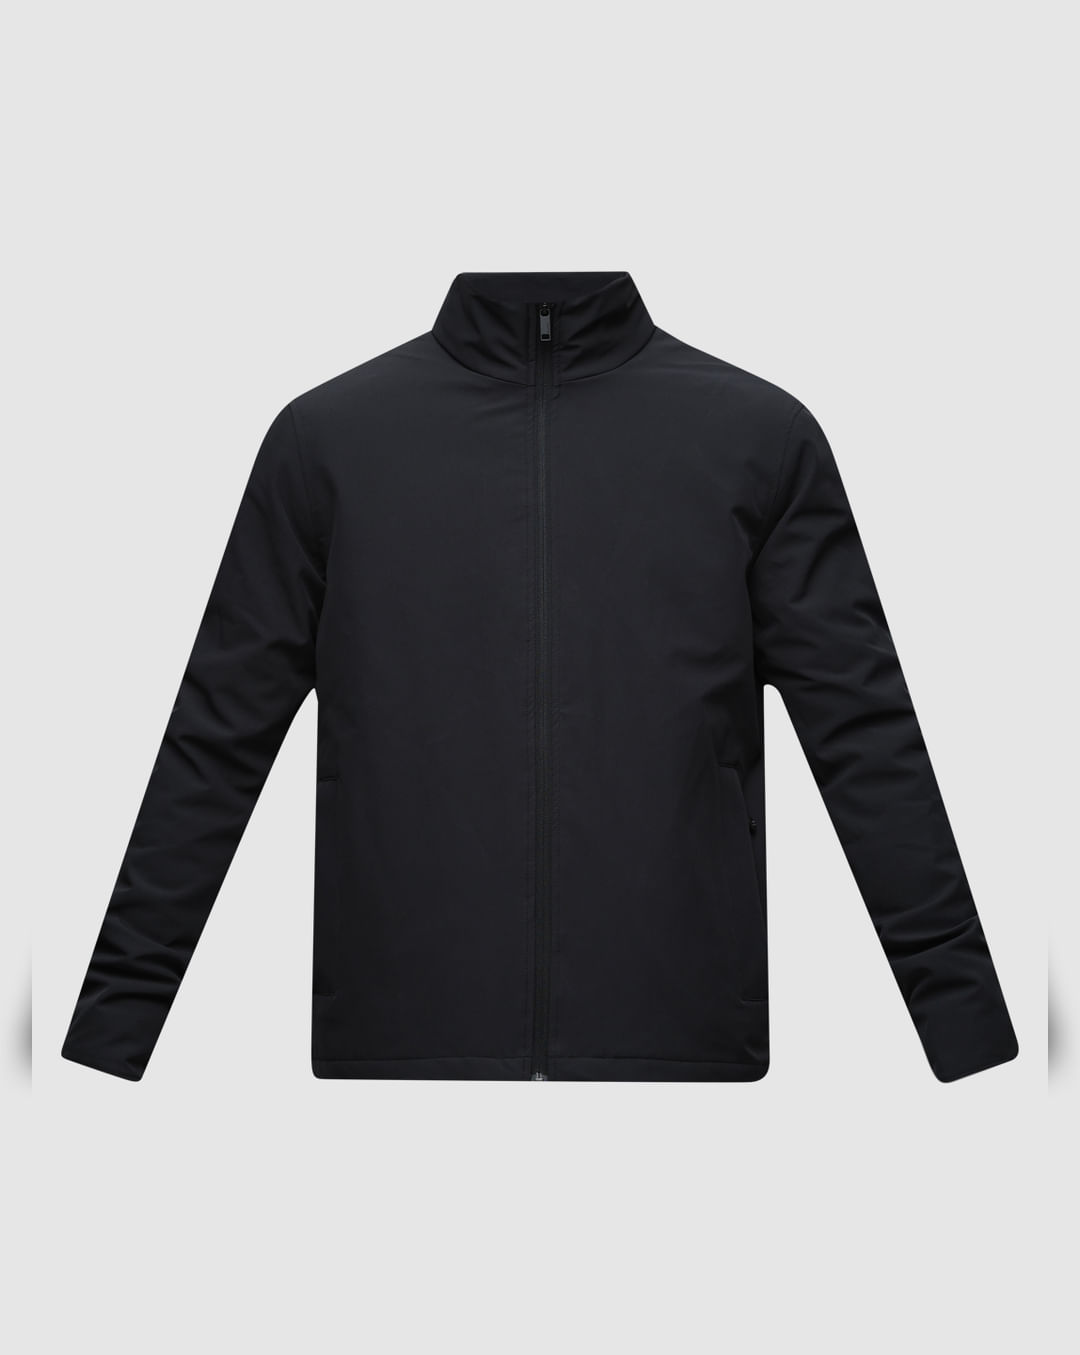 Buy Black High Neck Padded Jacket for Men Online at SELECTED HOMME ...